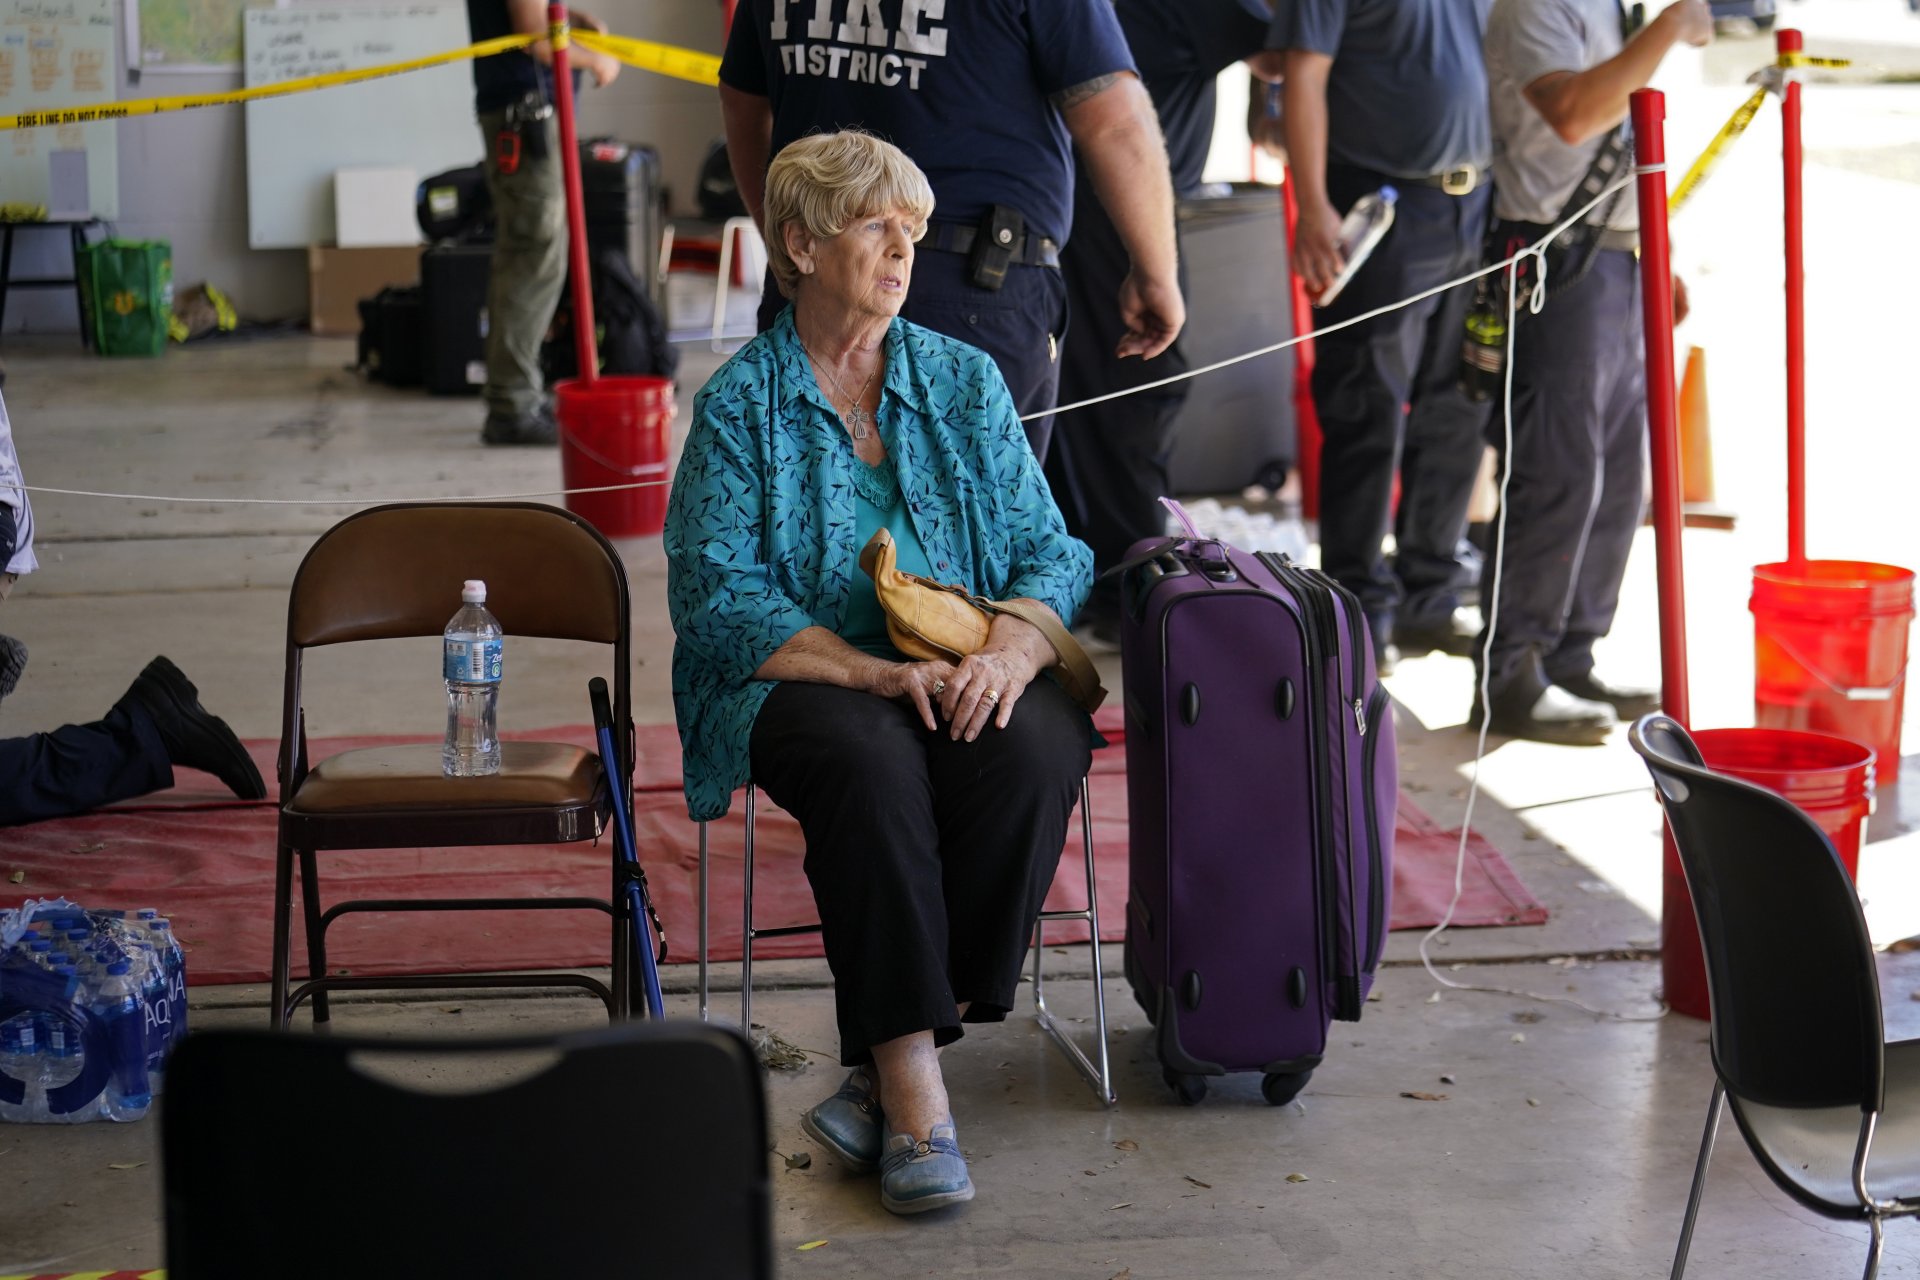 Линда Нюман, жителка на остров Пайн, която преодоля бурята на острова и наскоро загуби съпруга си, чака да бъде евакуирана след урагана Иън на остров Пайн